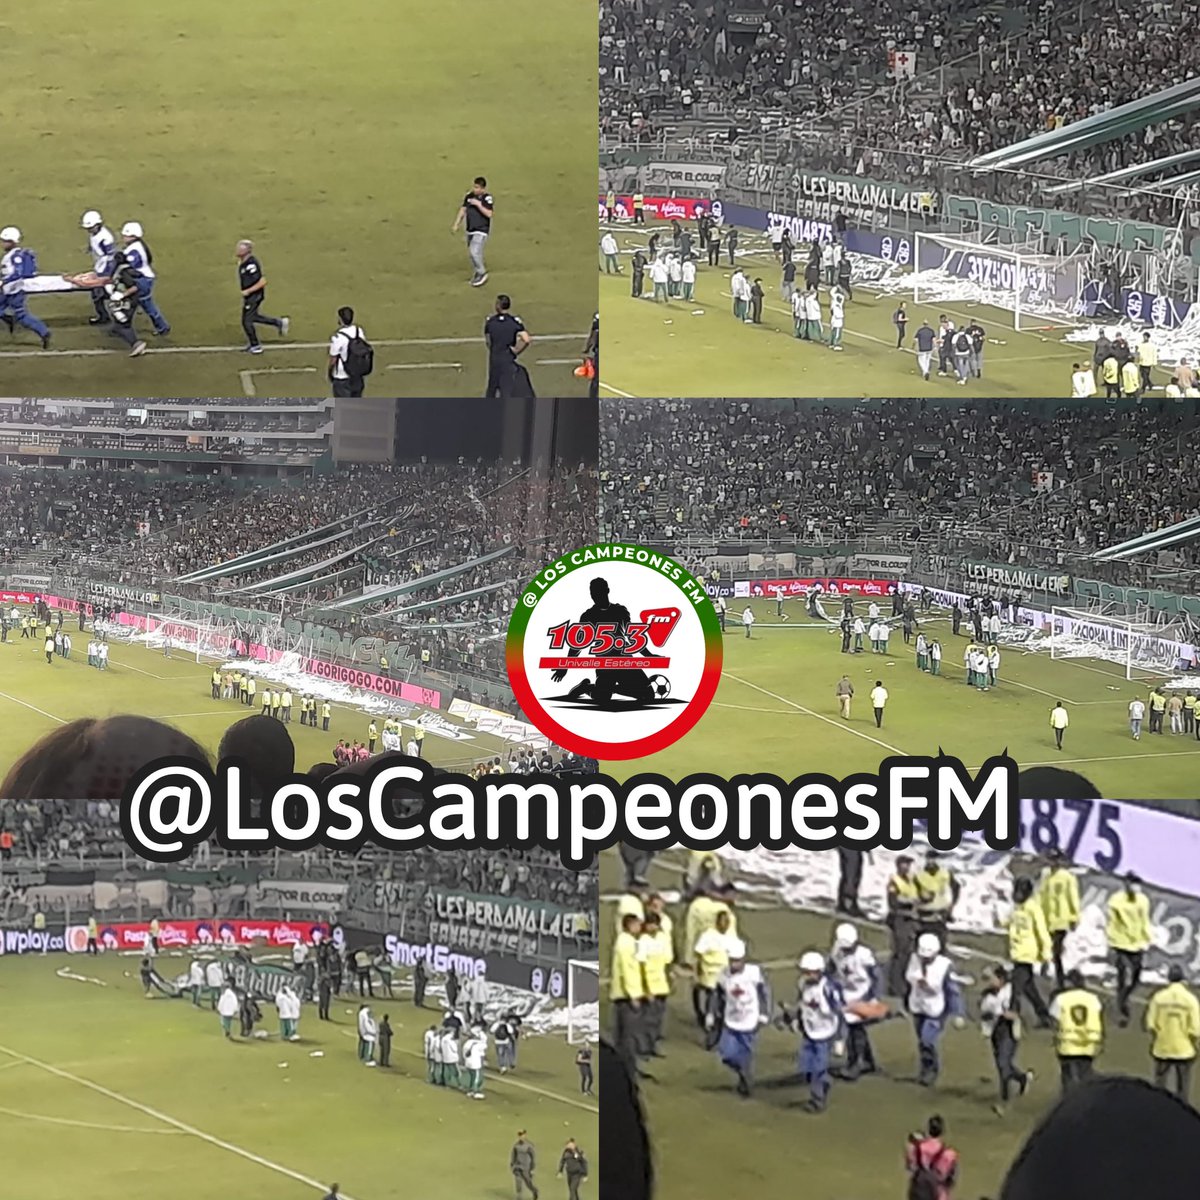 Continúan los inconvenientes en la tribuna sur del estadio del #DeportivoCali, salen en camilla más personas heridas   tras incidentes presentados antes de iniciar el segundo tiempo del #ClásicoVallecaucano 

#LosCampeonesFM